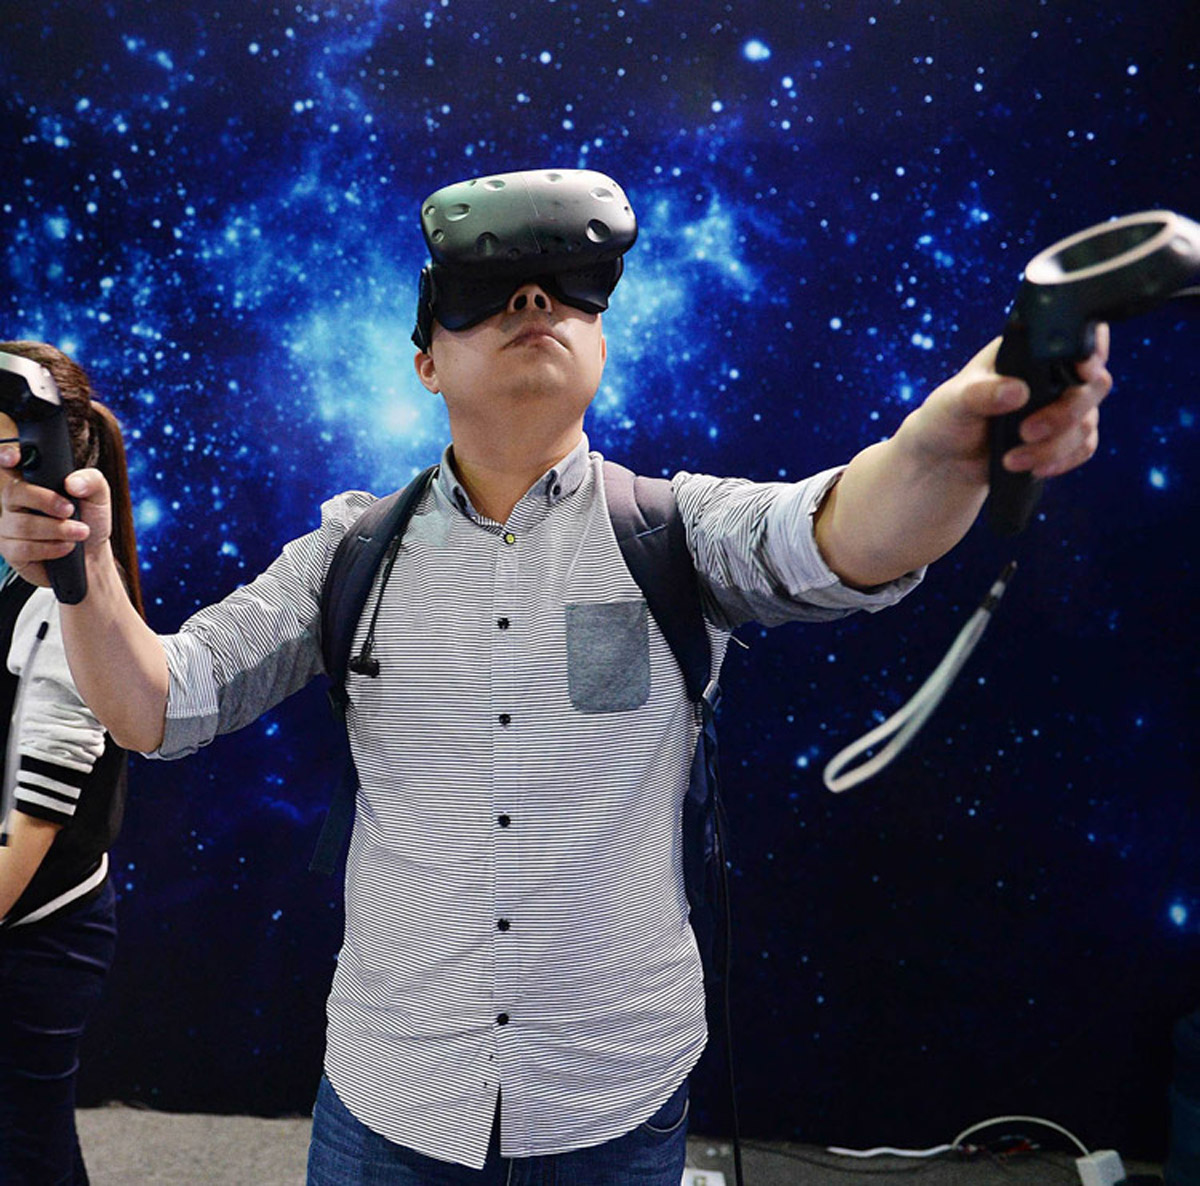 普兰社区安全VR虚拟现实体验馆